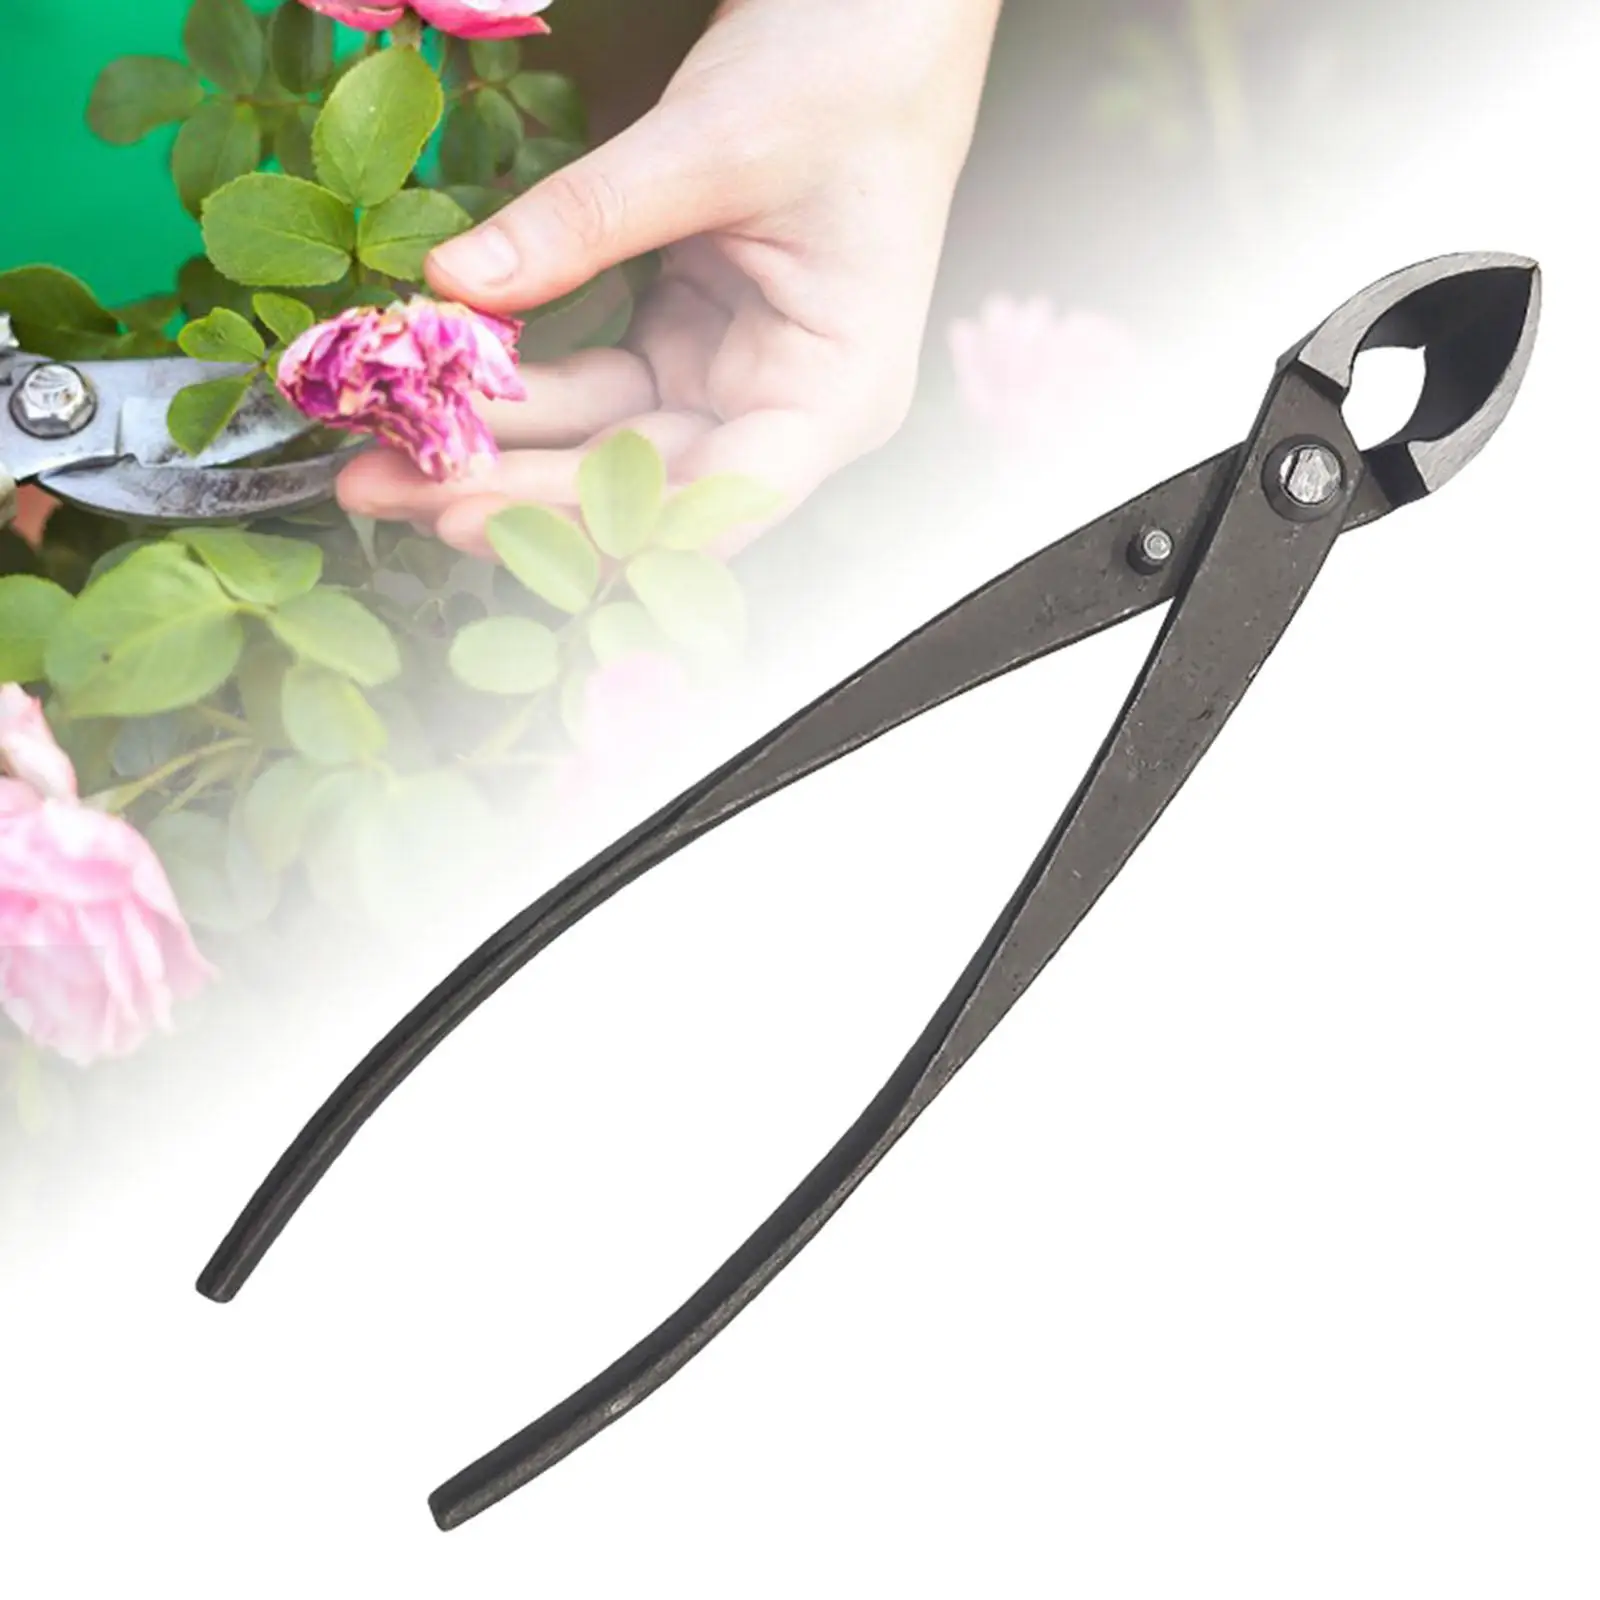 8inch Garden Branch Cutter Beginner Scissors Cutter Pruning Shear for Bonsai